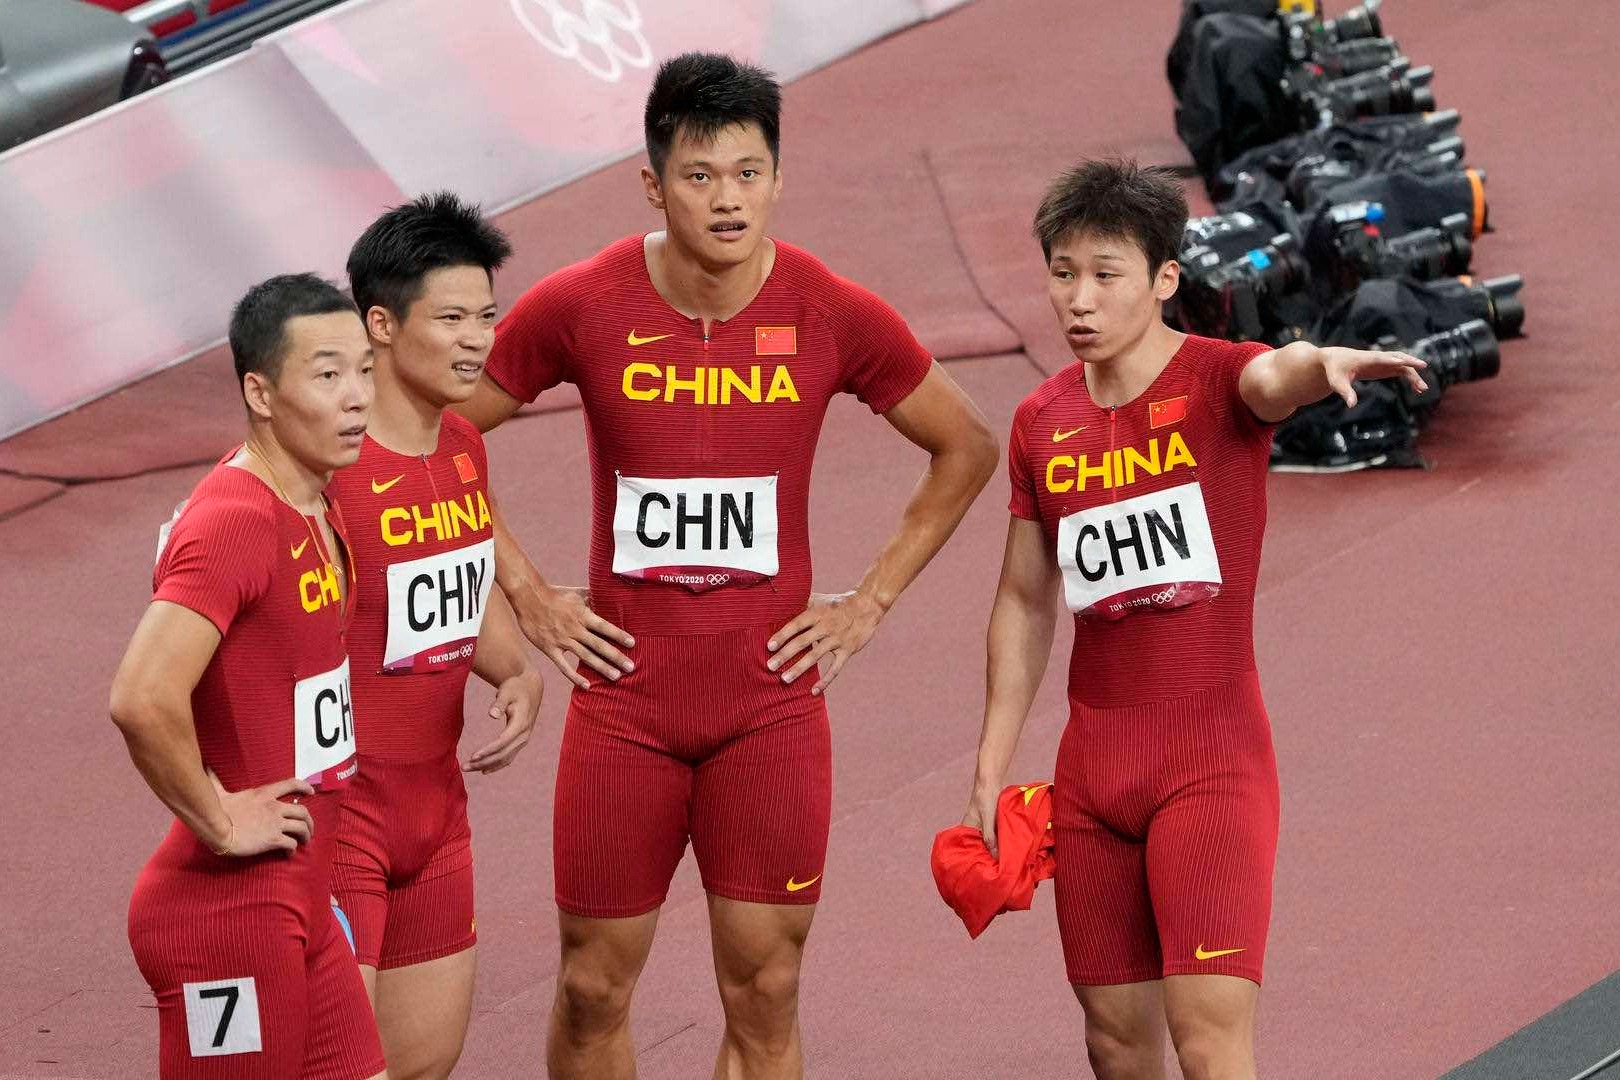 中國隊正式遞補東京奧運
男子4×100米接力銅牌